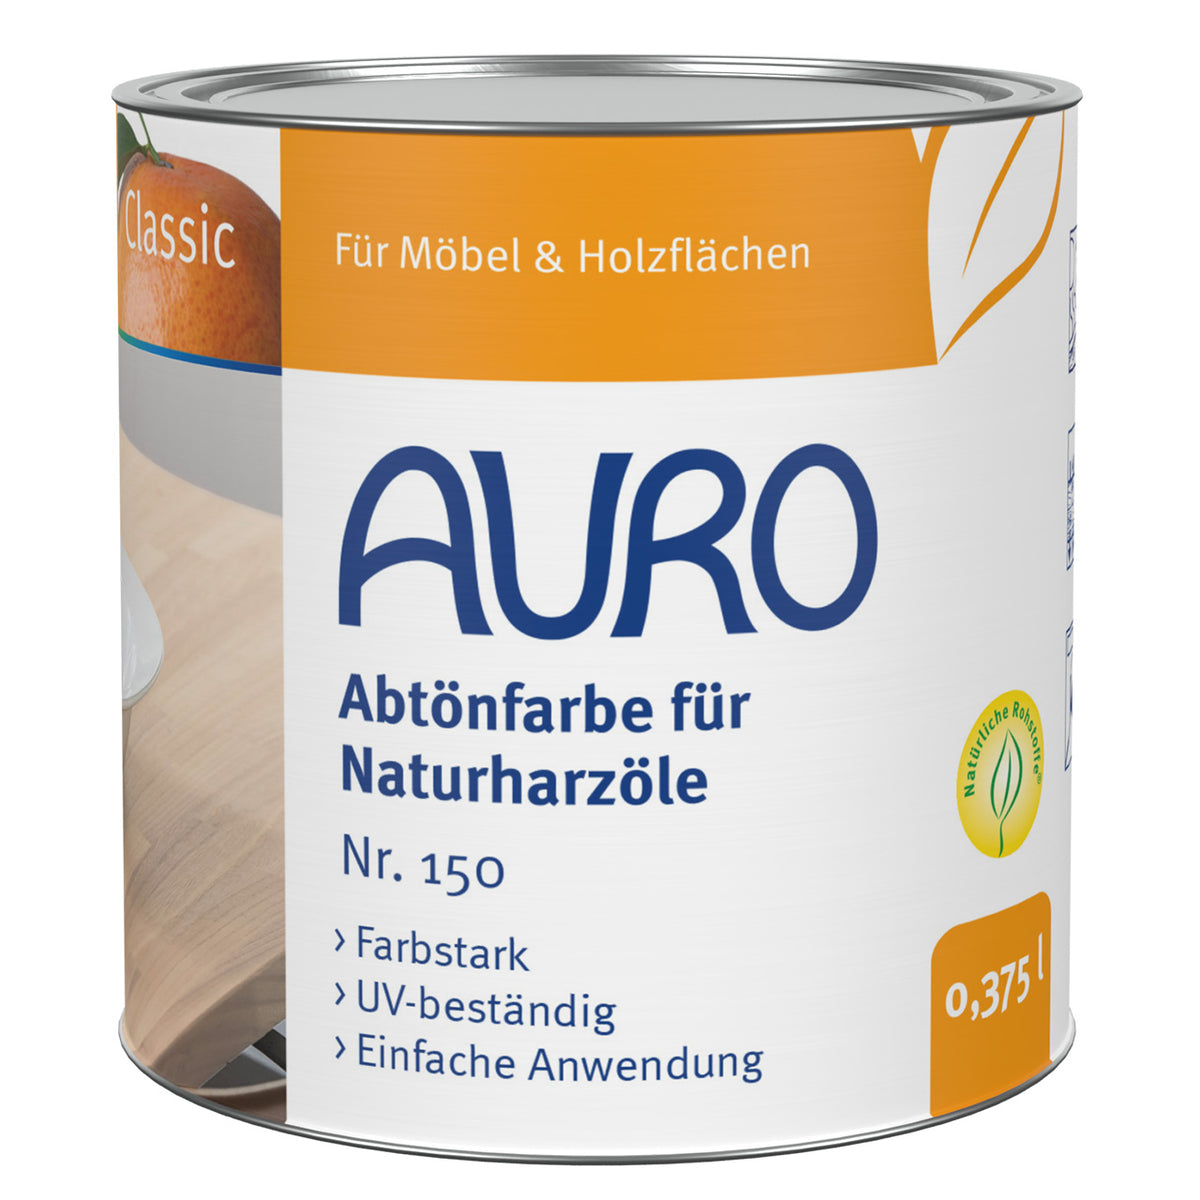 AURO Abtönfarbe für Naturharzöle Nr. 150-99 | Erd-Schwarz